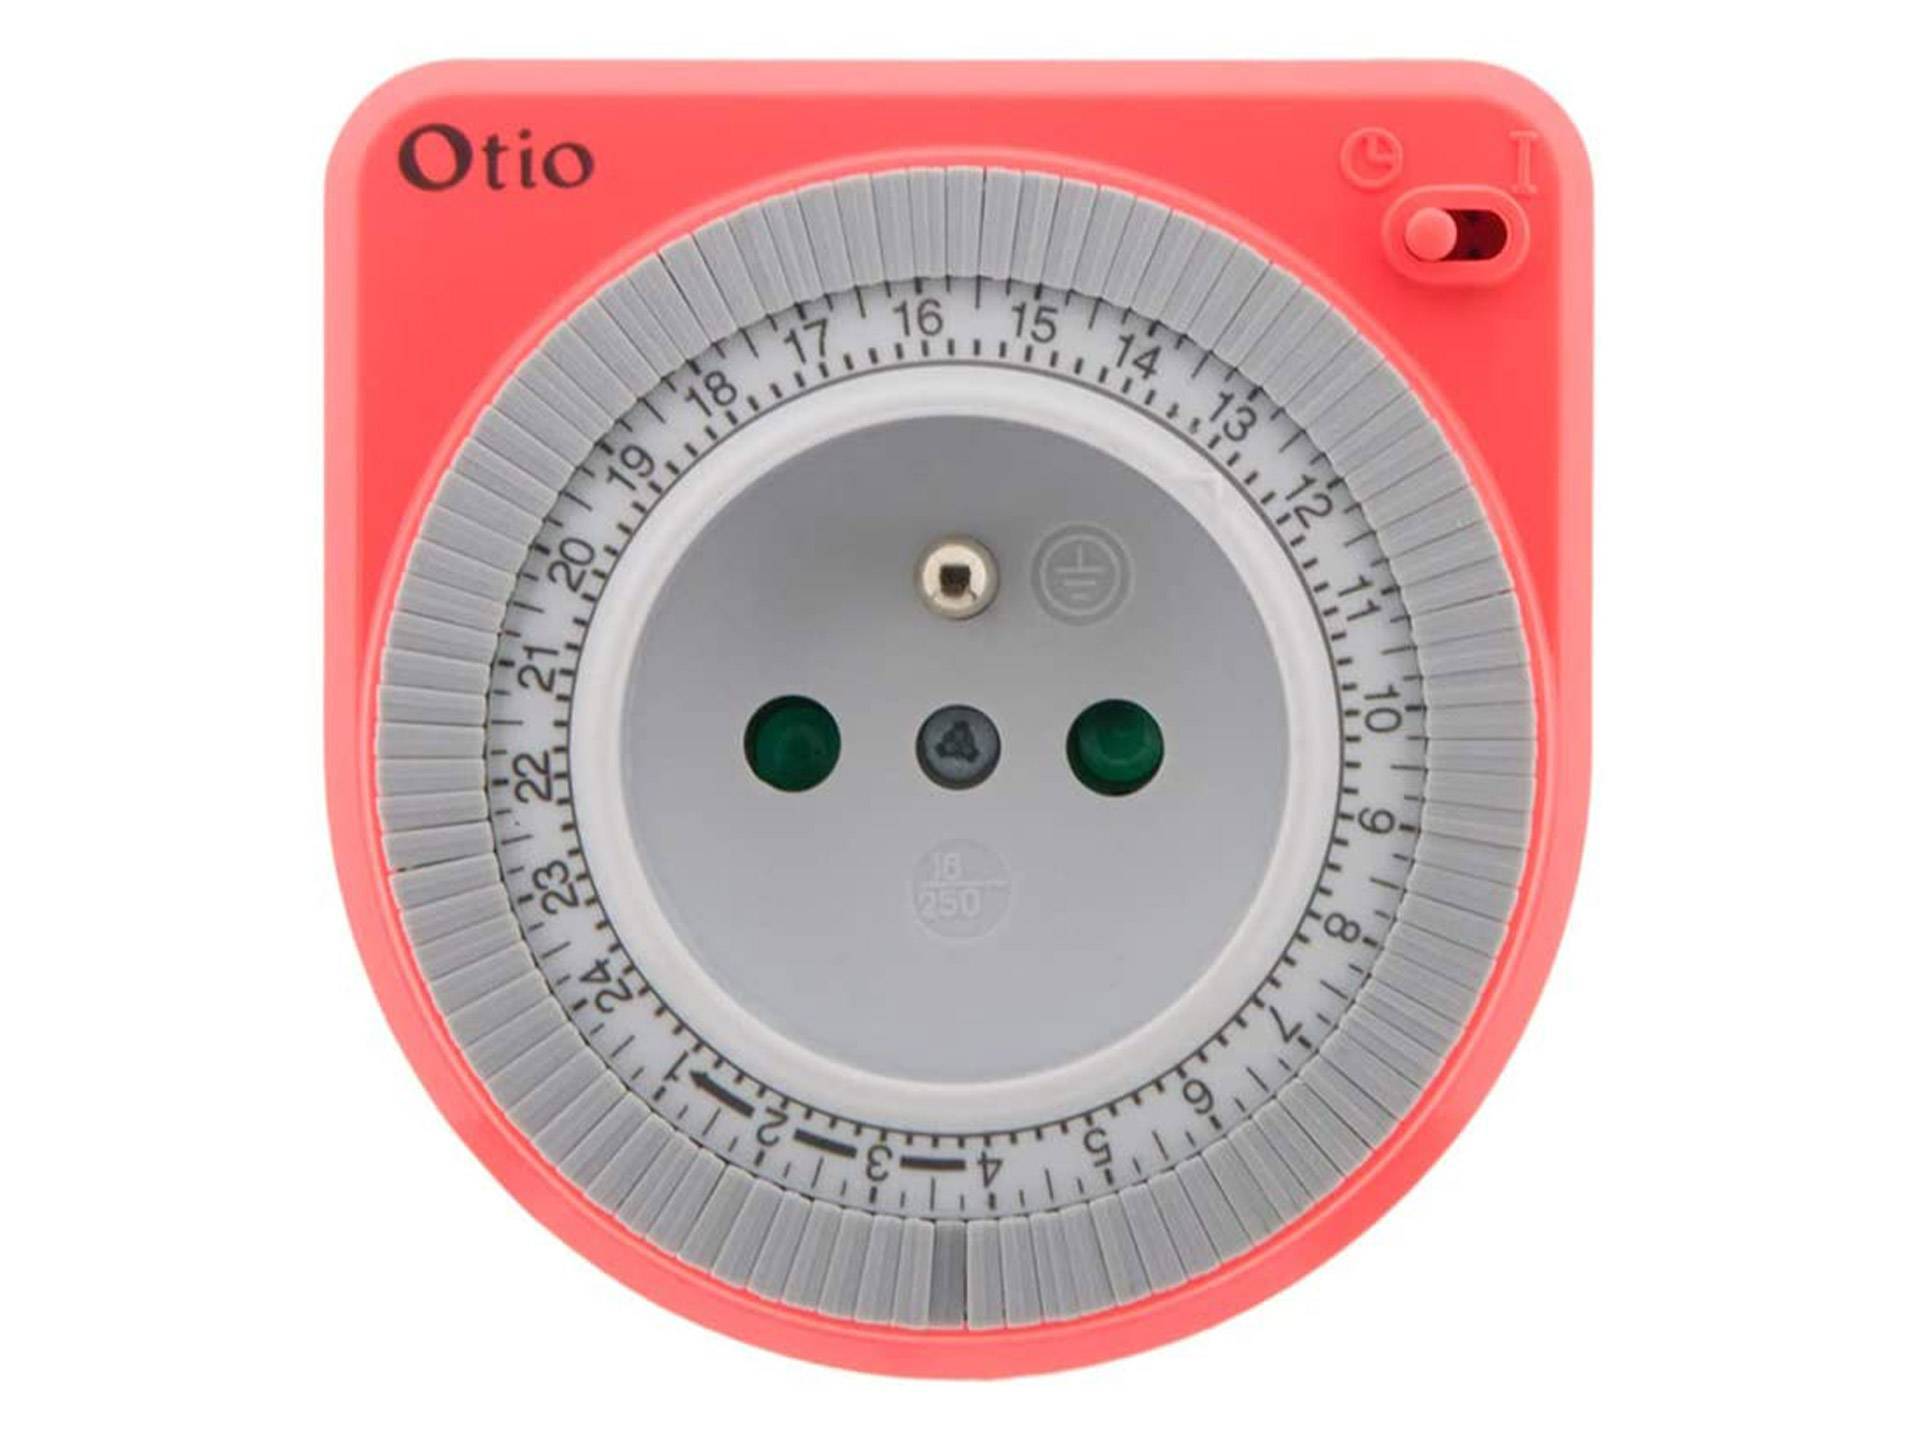 Prise avec minuterie de coupure automatique rose Otio deuxième